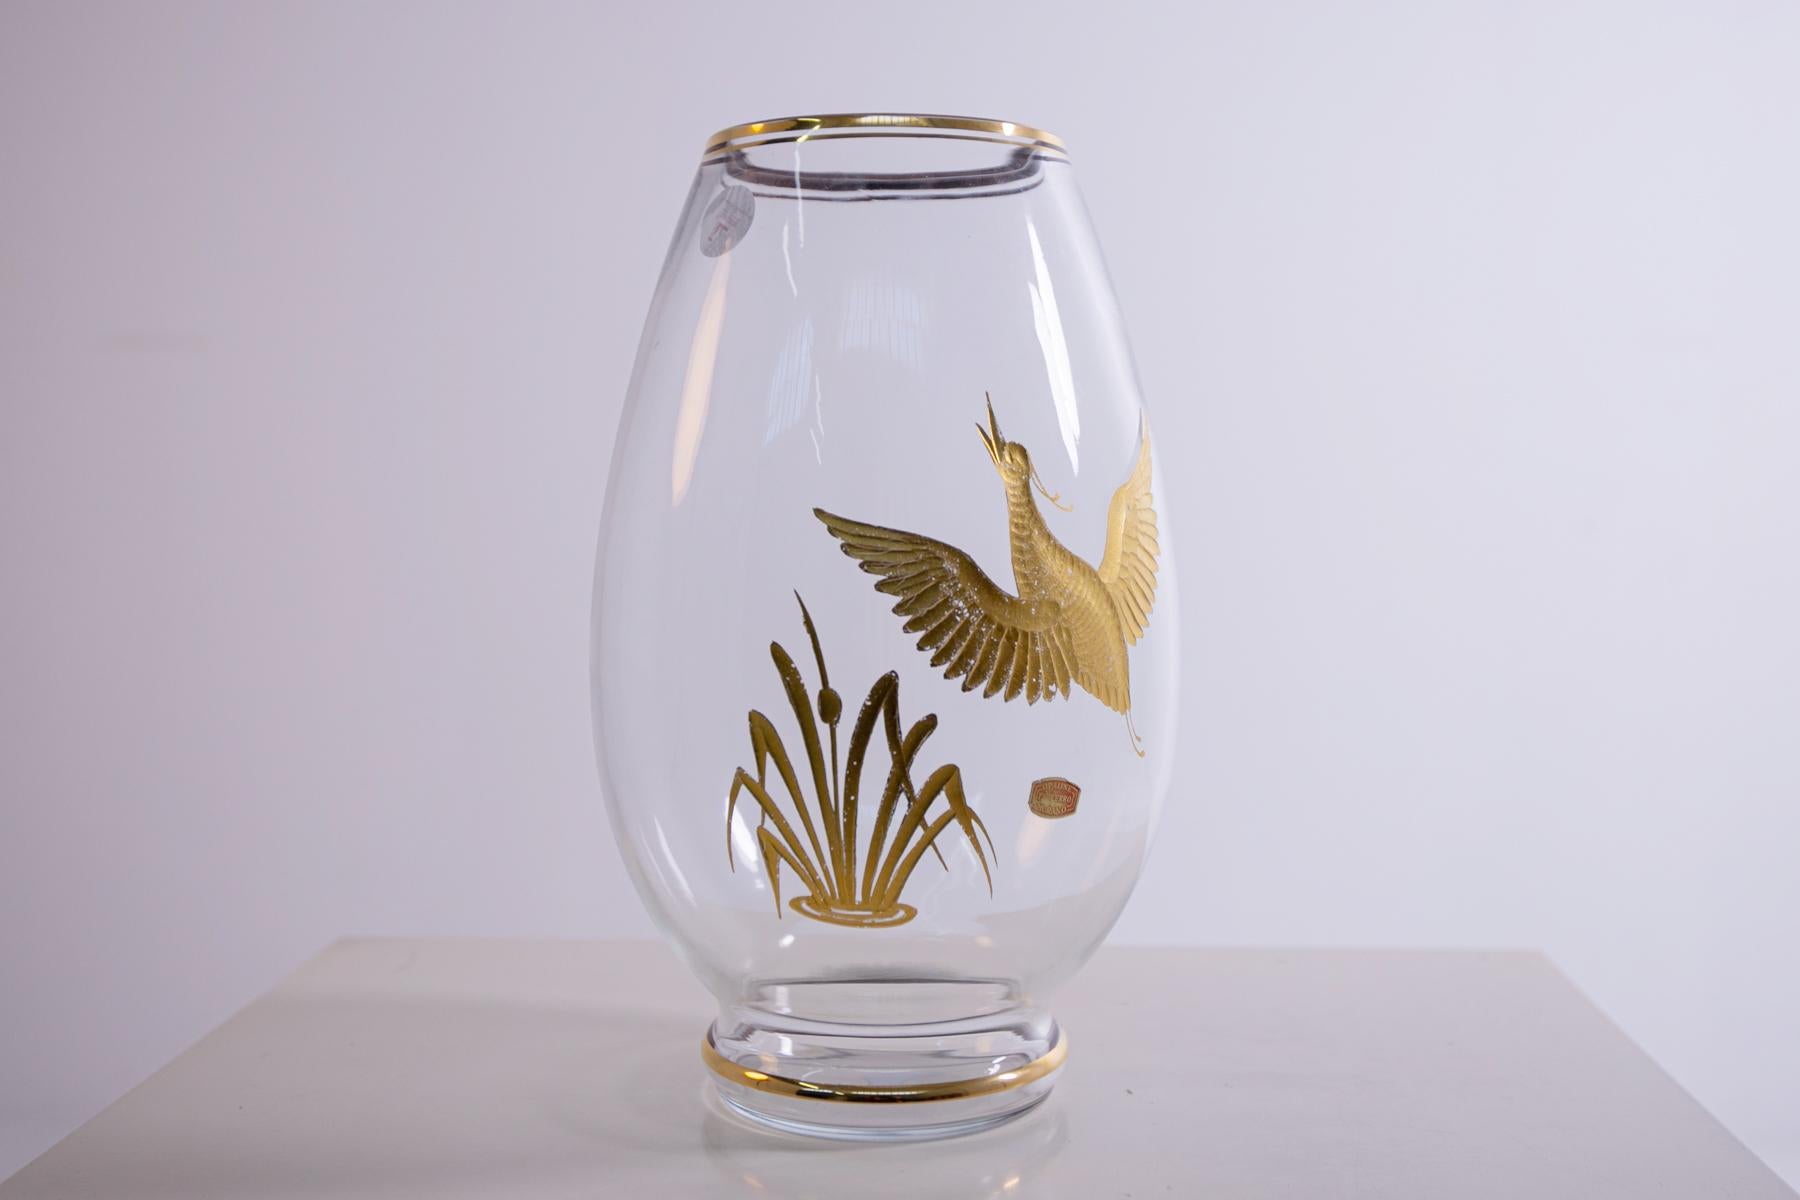 Transparente Vase aus Murano-Glas, hergestellt von Opaline Ferro Brother's für Finzi im Jahr 1950. Markiert auf dem Sockel und dem originalen Label.
Die Vase aus Murano wurde mit speziellen Techniken für die Verarbeitung von geblasenem Glas